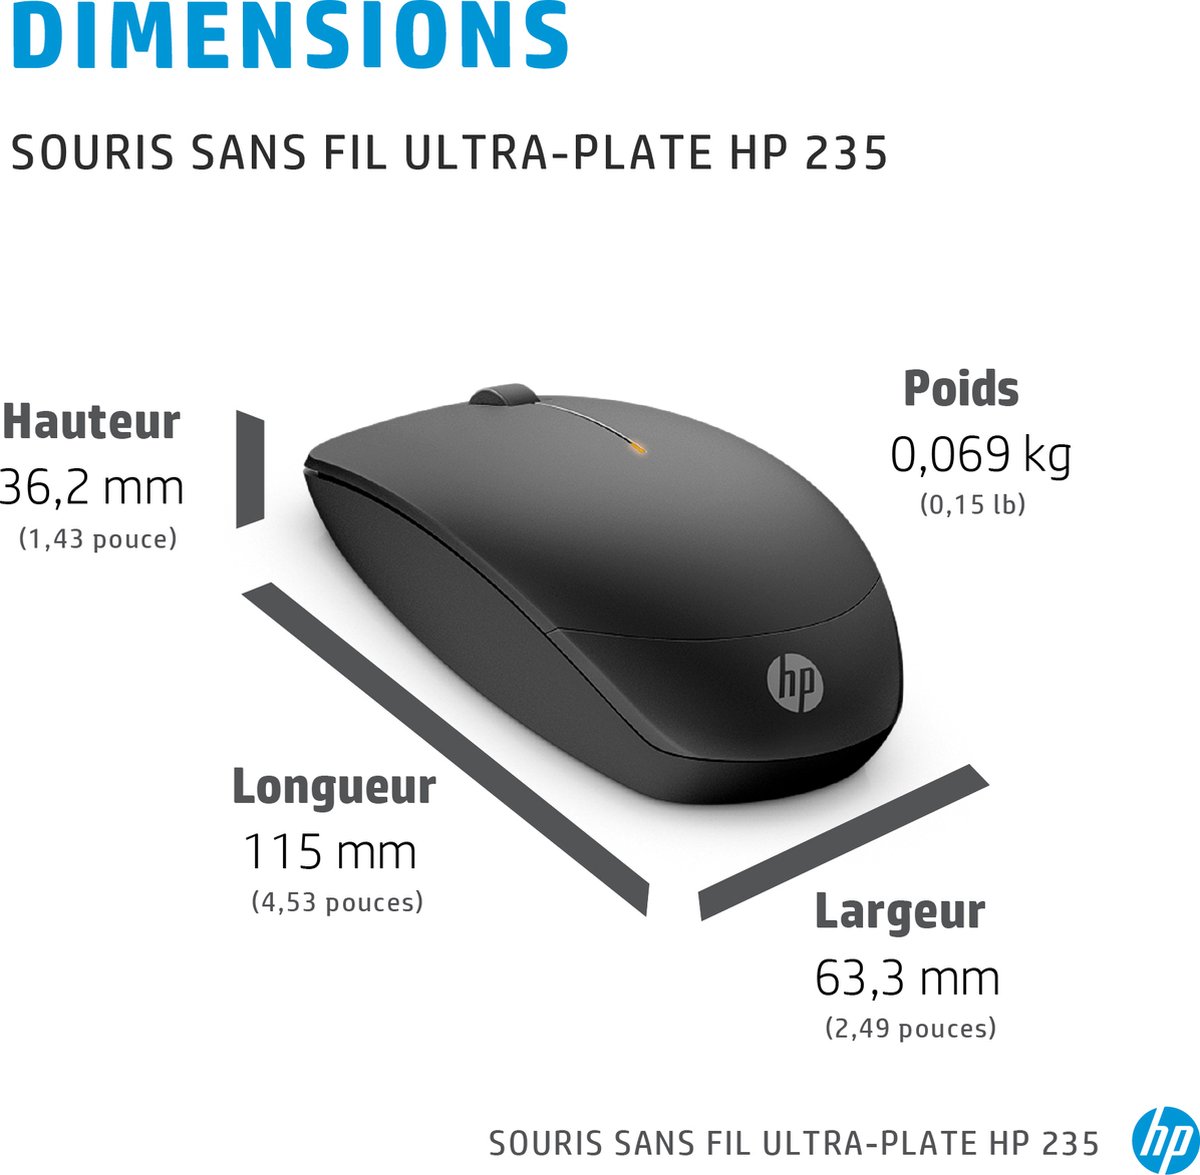 HP Souris sans fil ultra-plate 235